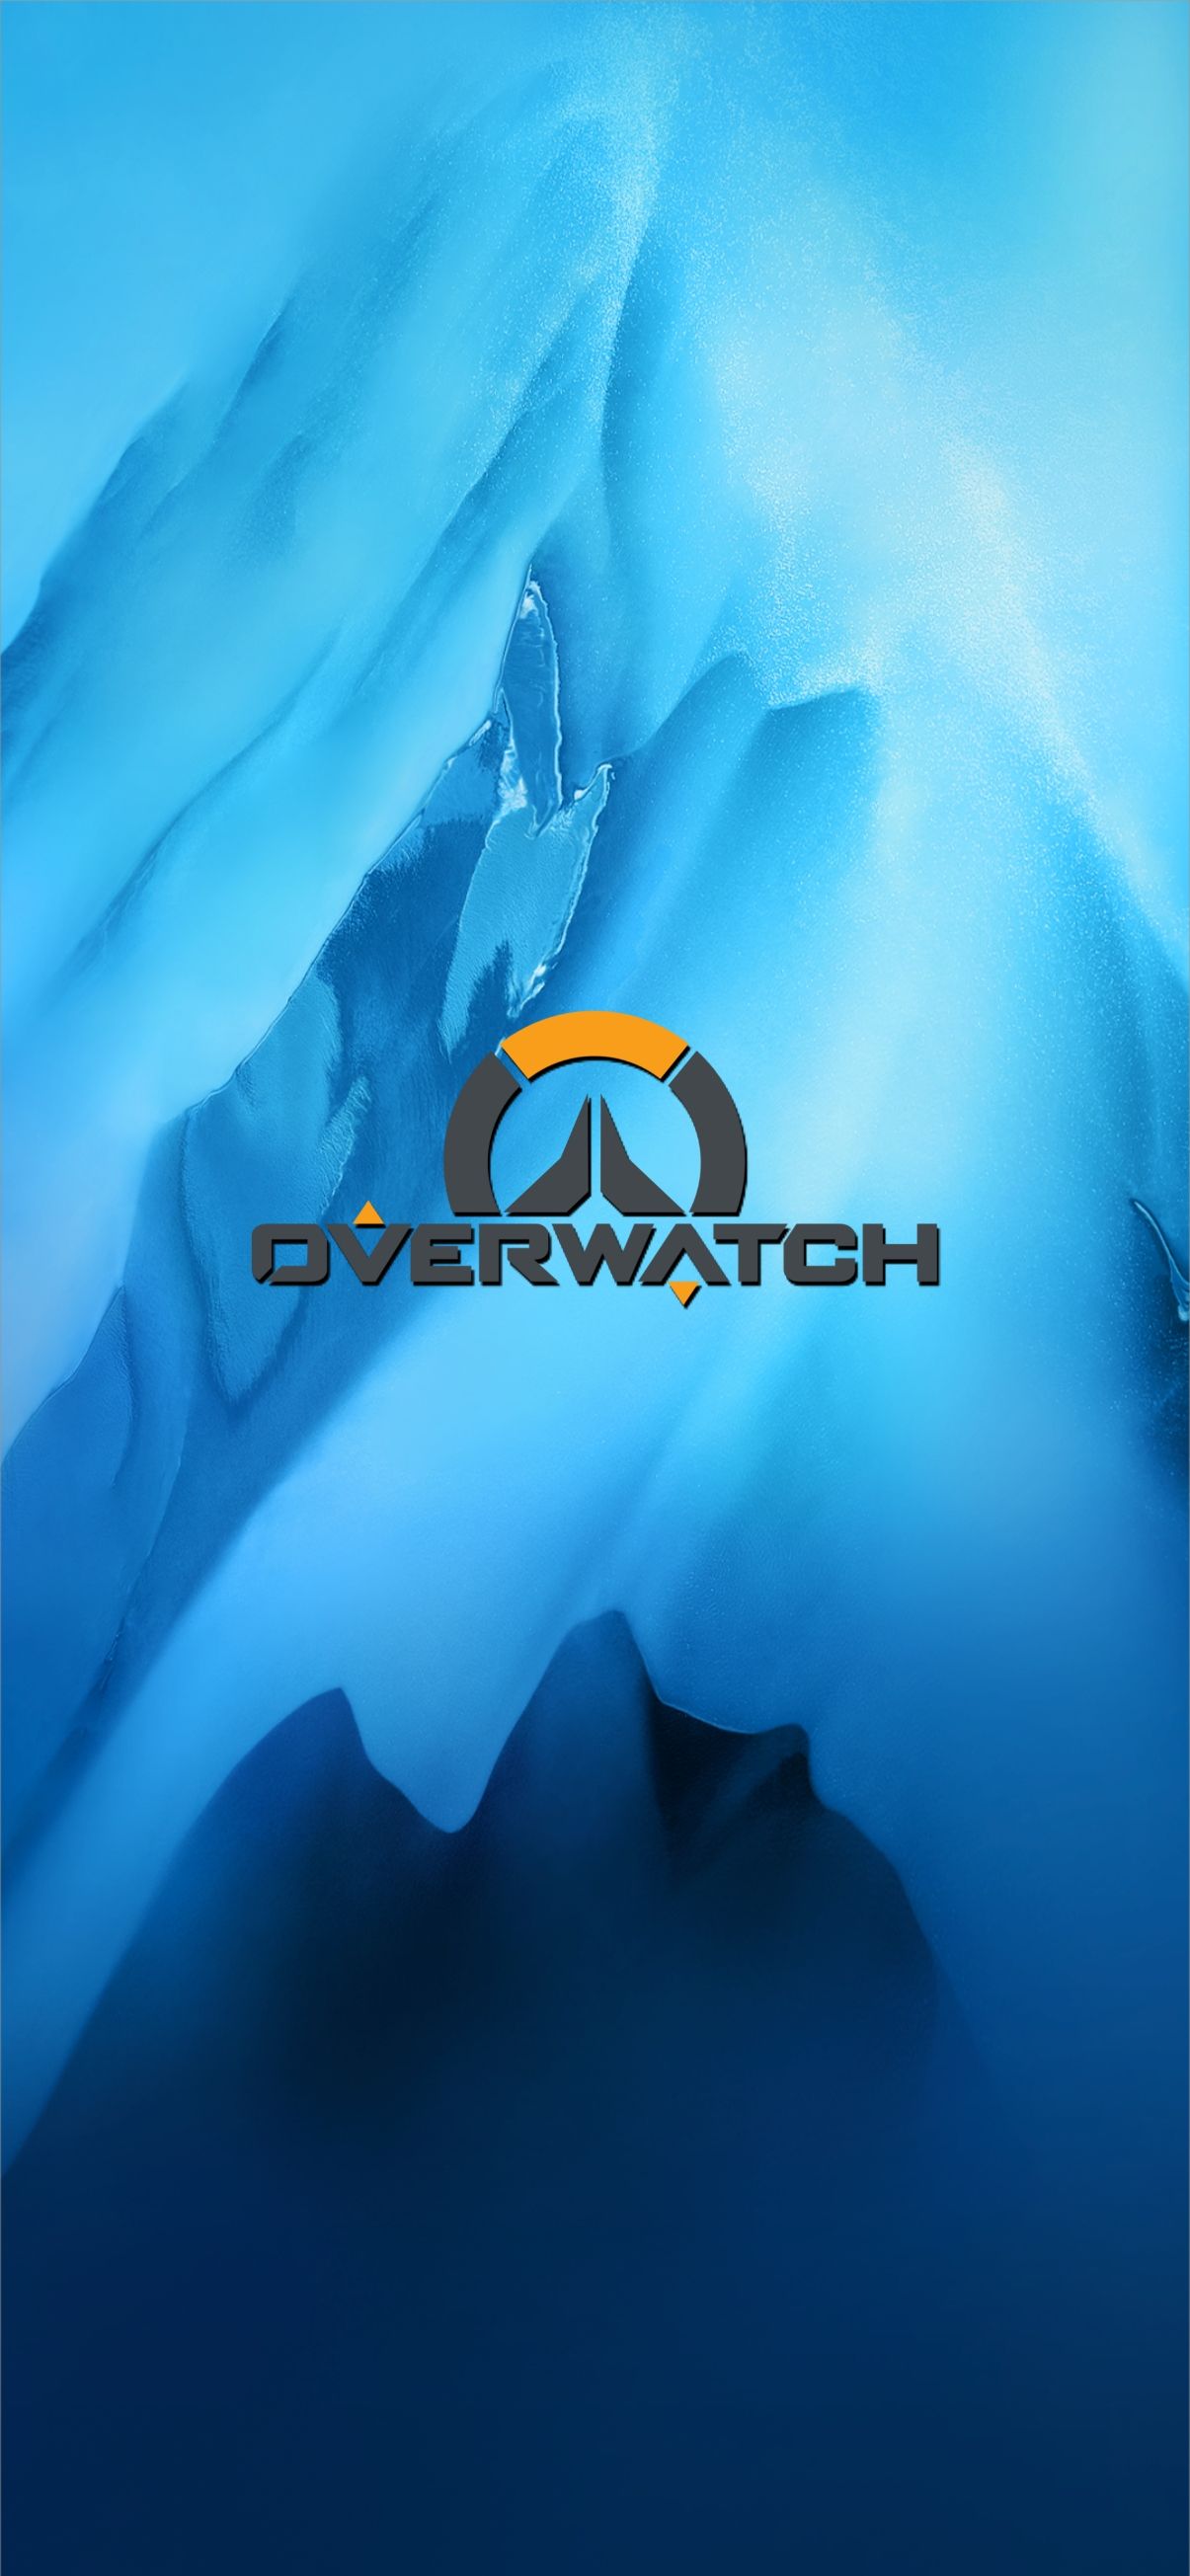 overwatch logo wallpaper mobile. Overwatch wallpaper, Overwatch, Wallpaper